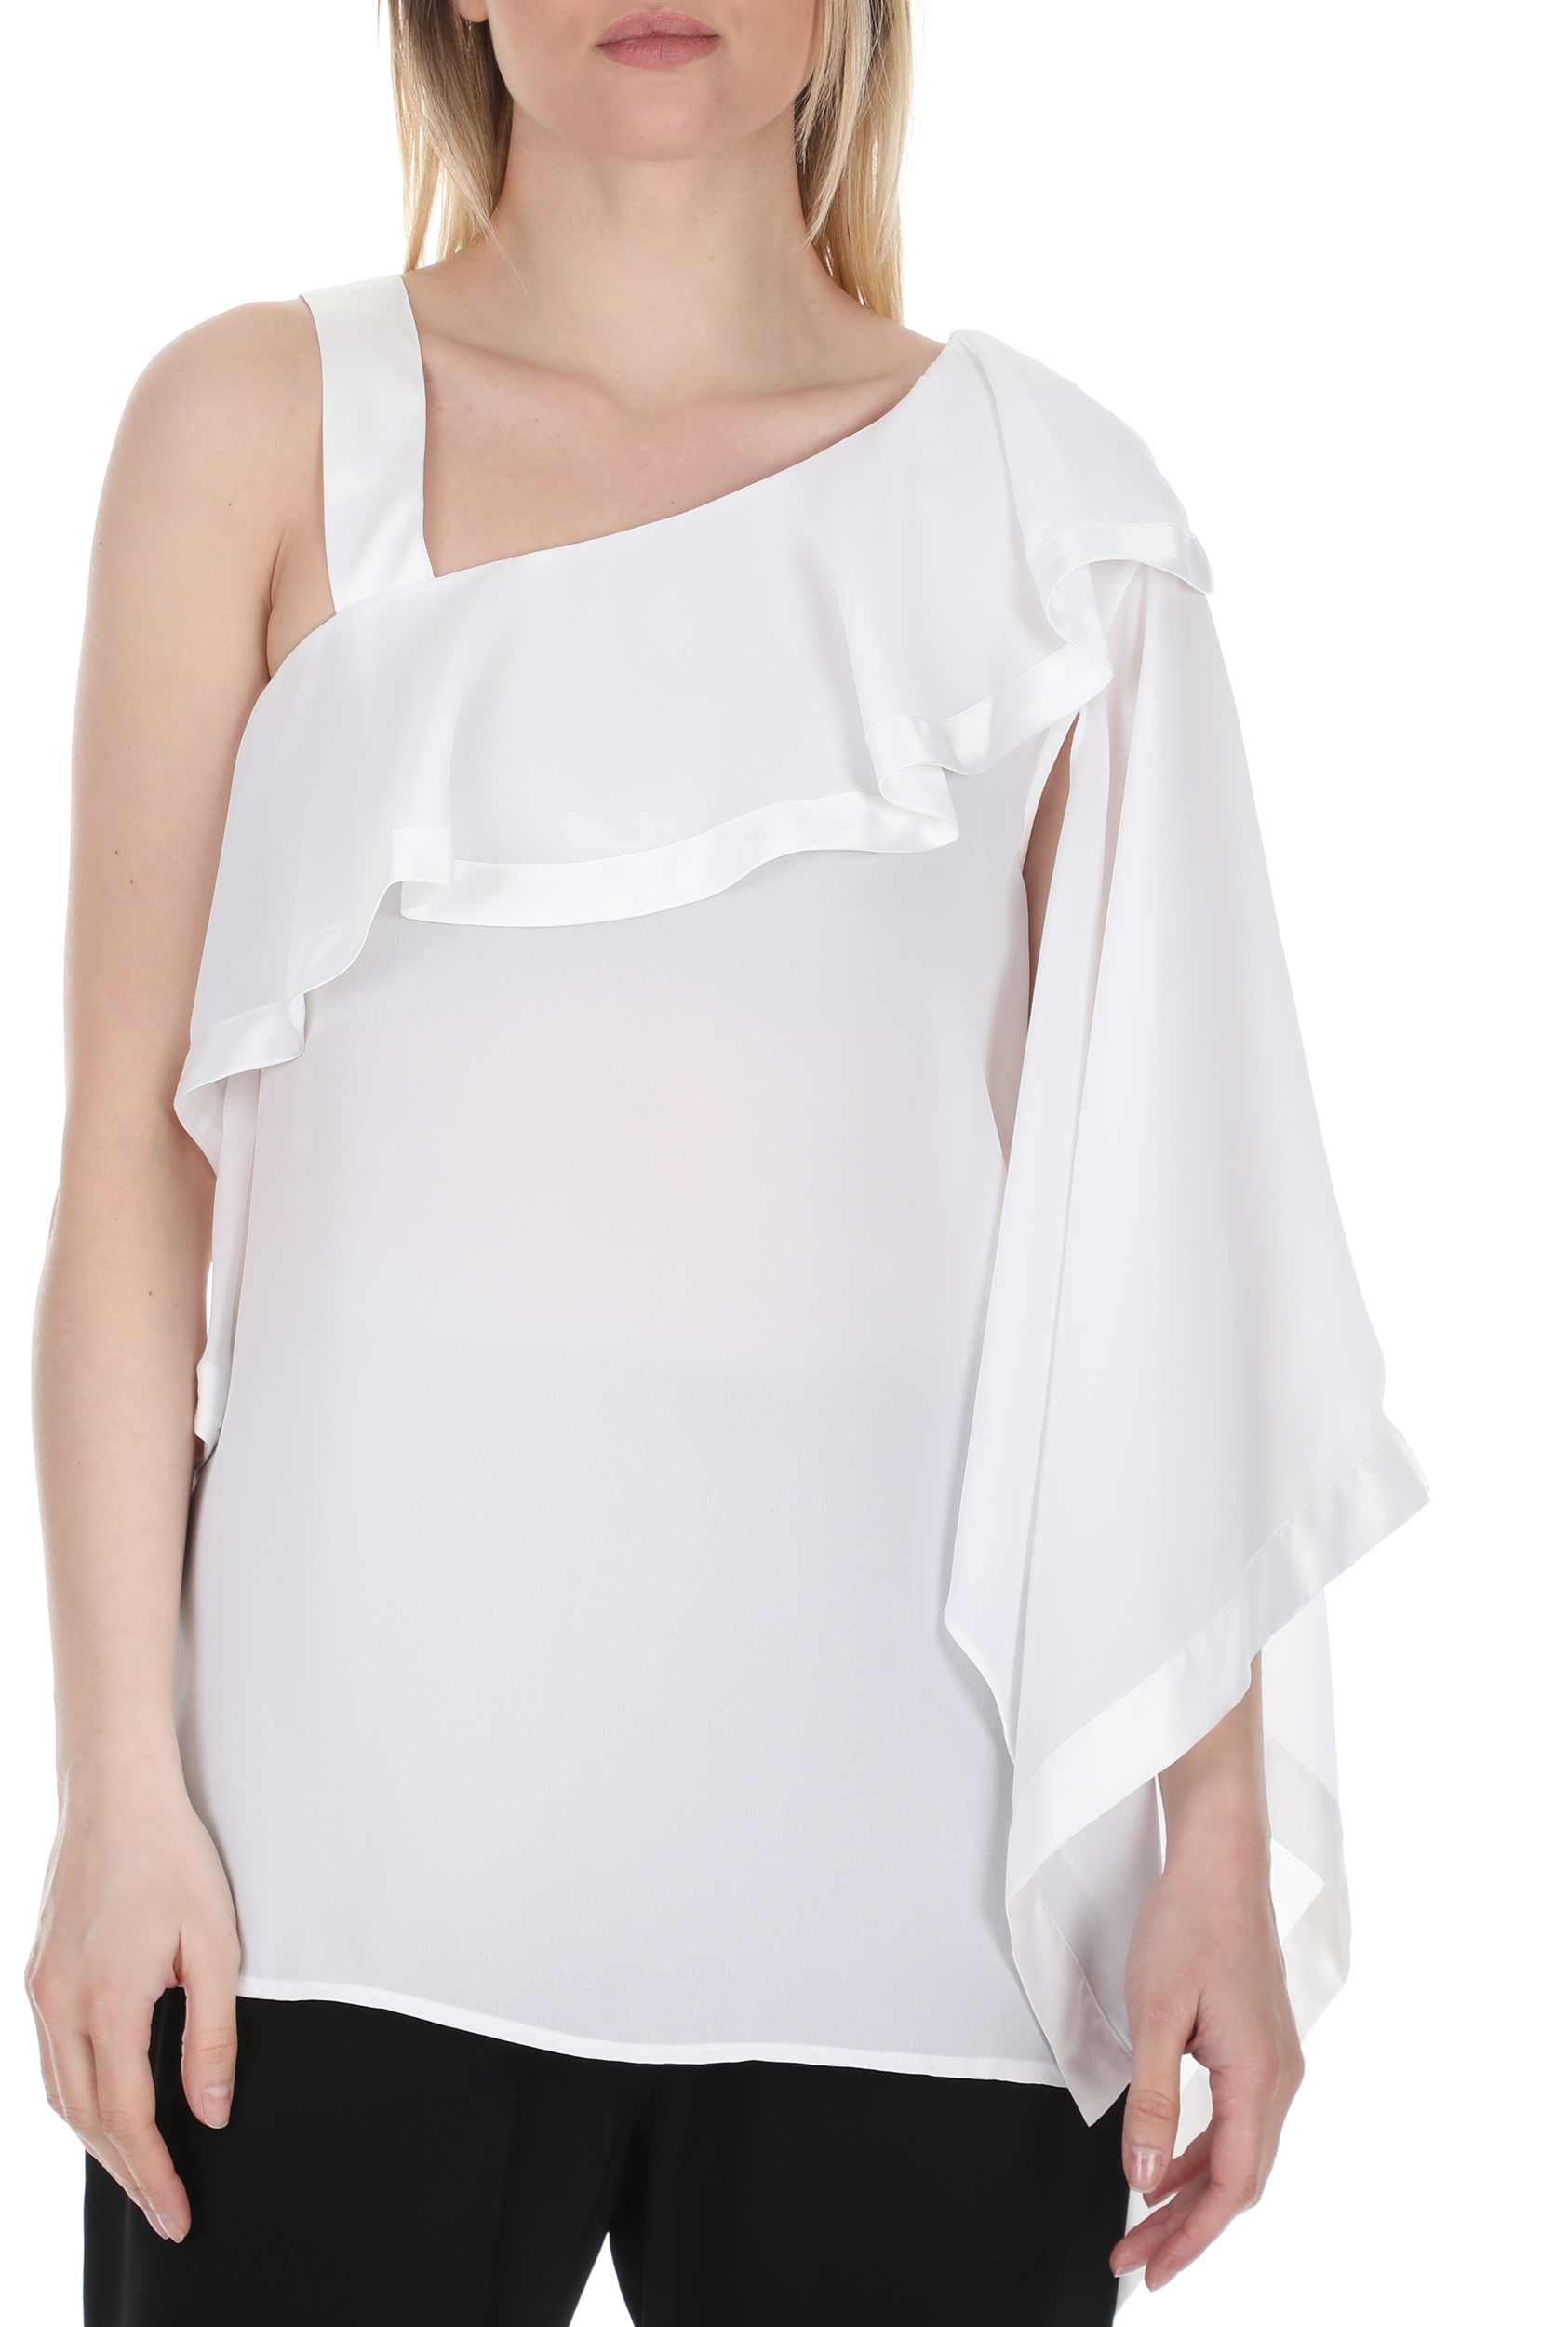 Γυναικεία/Ρούχα/Μπλούζες/Τοπ NENETTE - Γυναικεία μπλούζα με έναν ώμο NENETTE FLIA λευκή